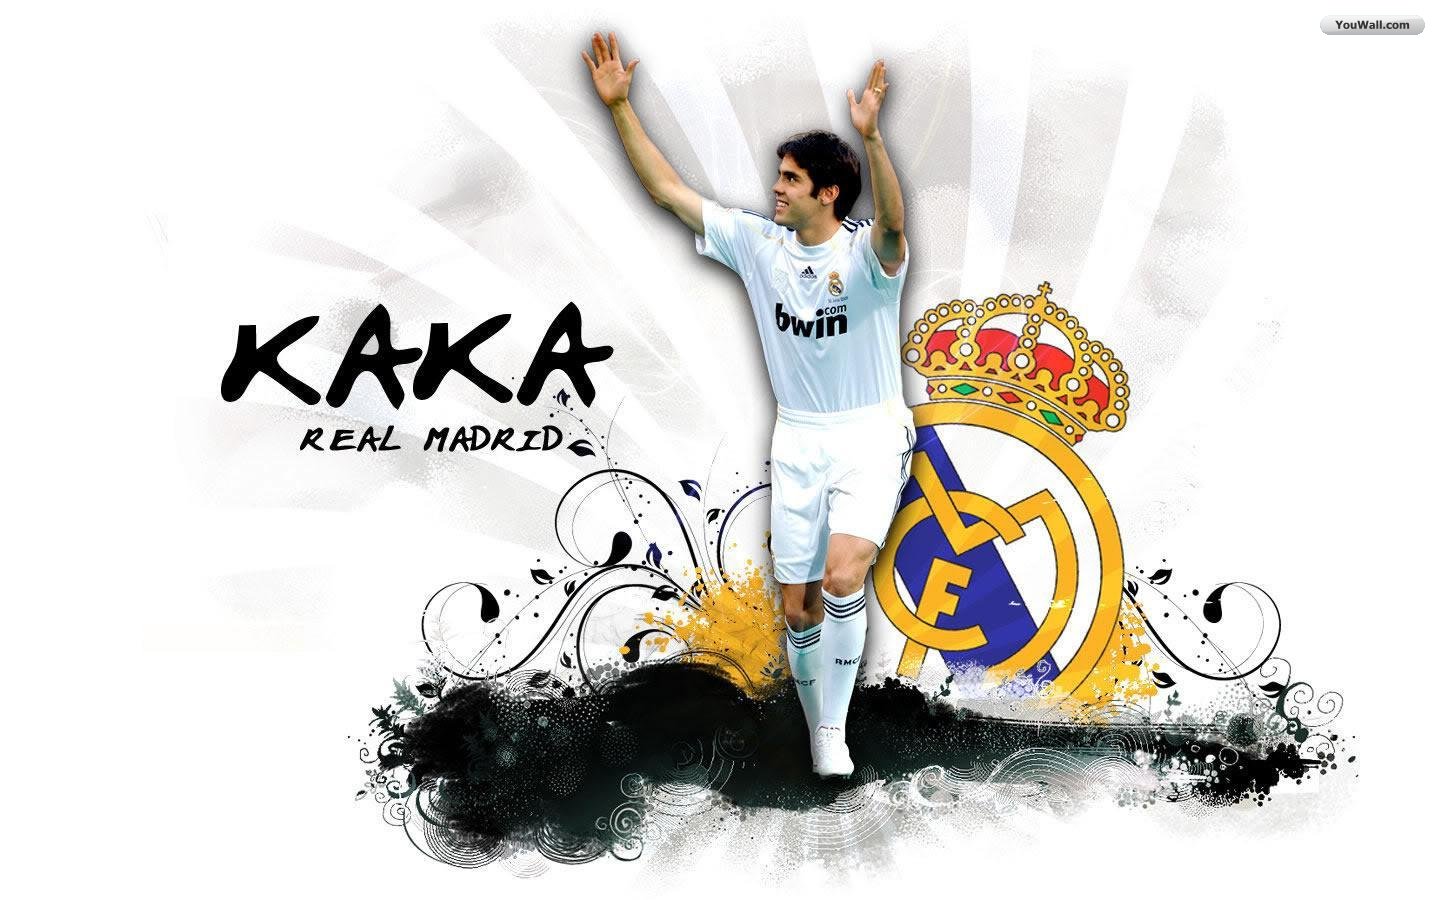 Youwall Kaka Real Madrid Wallpaper